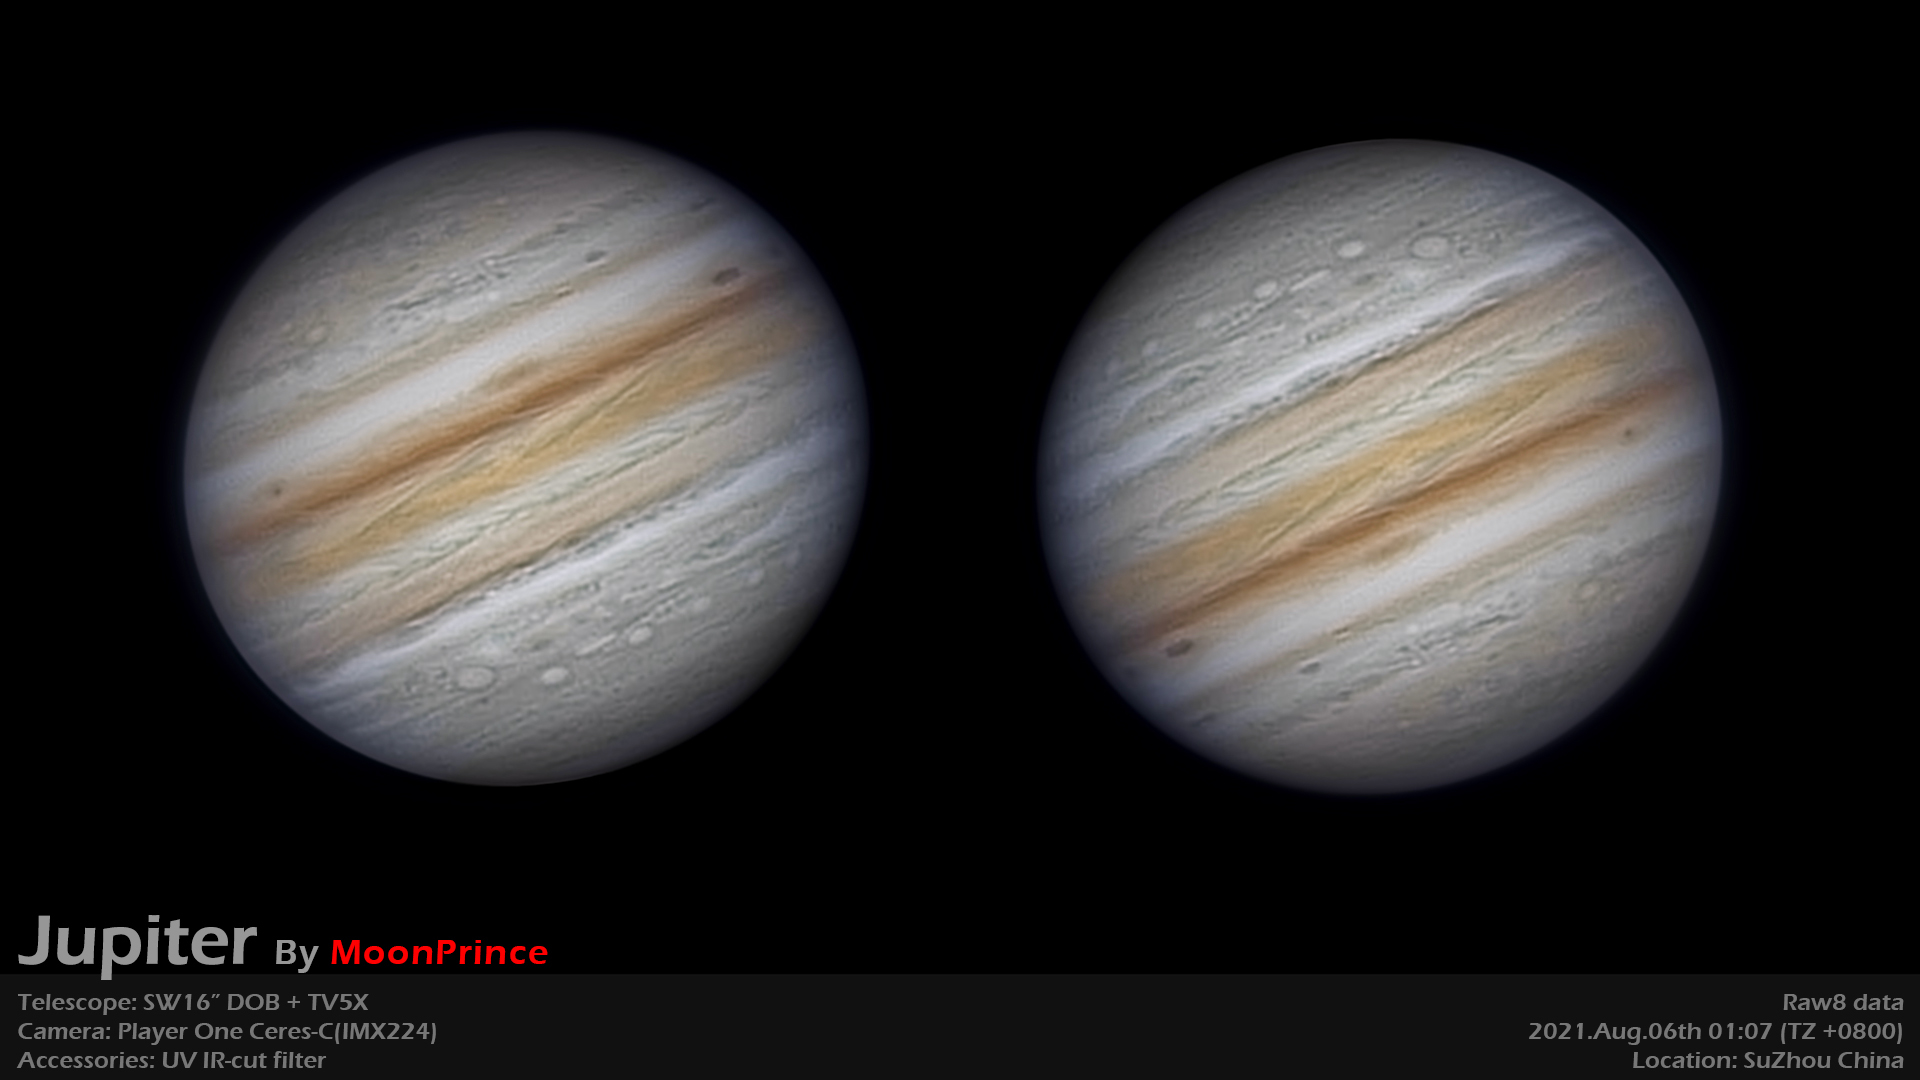 Jupiter20210806-Ceres-C-2DR.jpg (1920×1080)